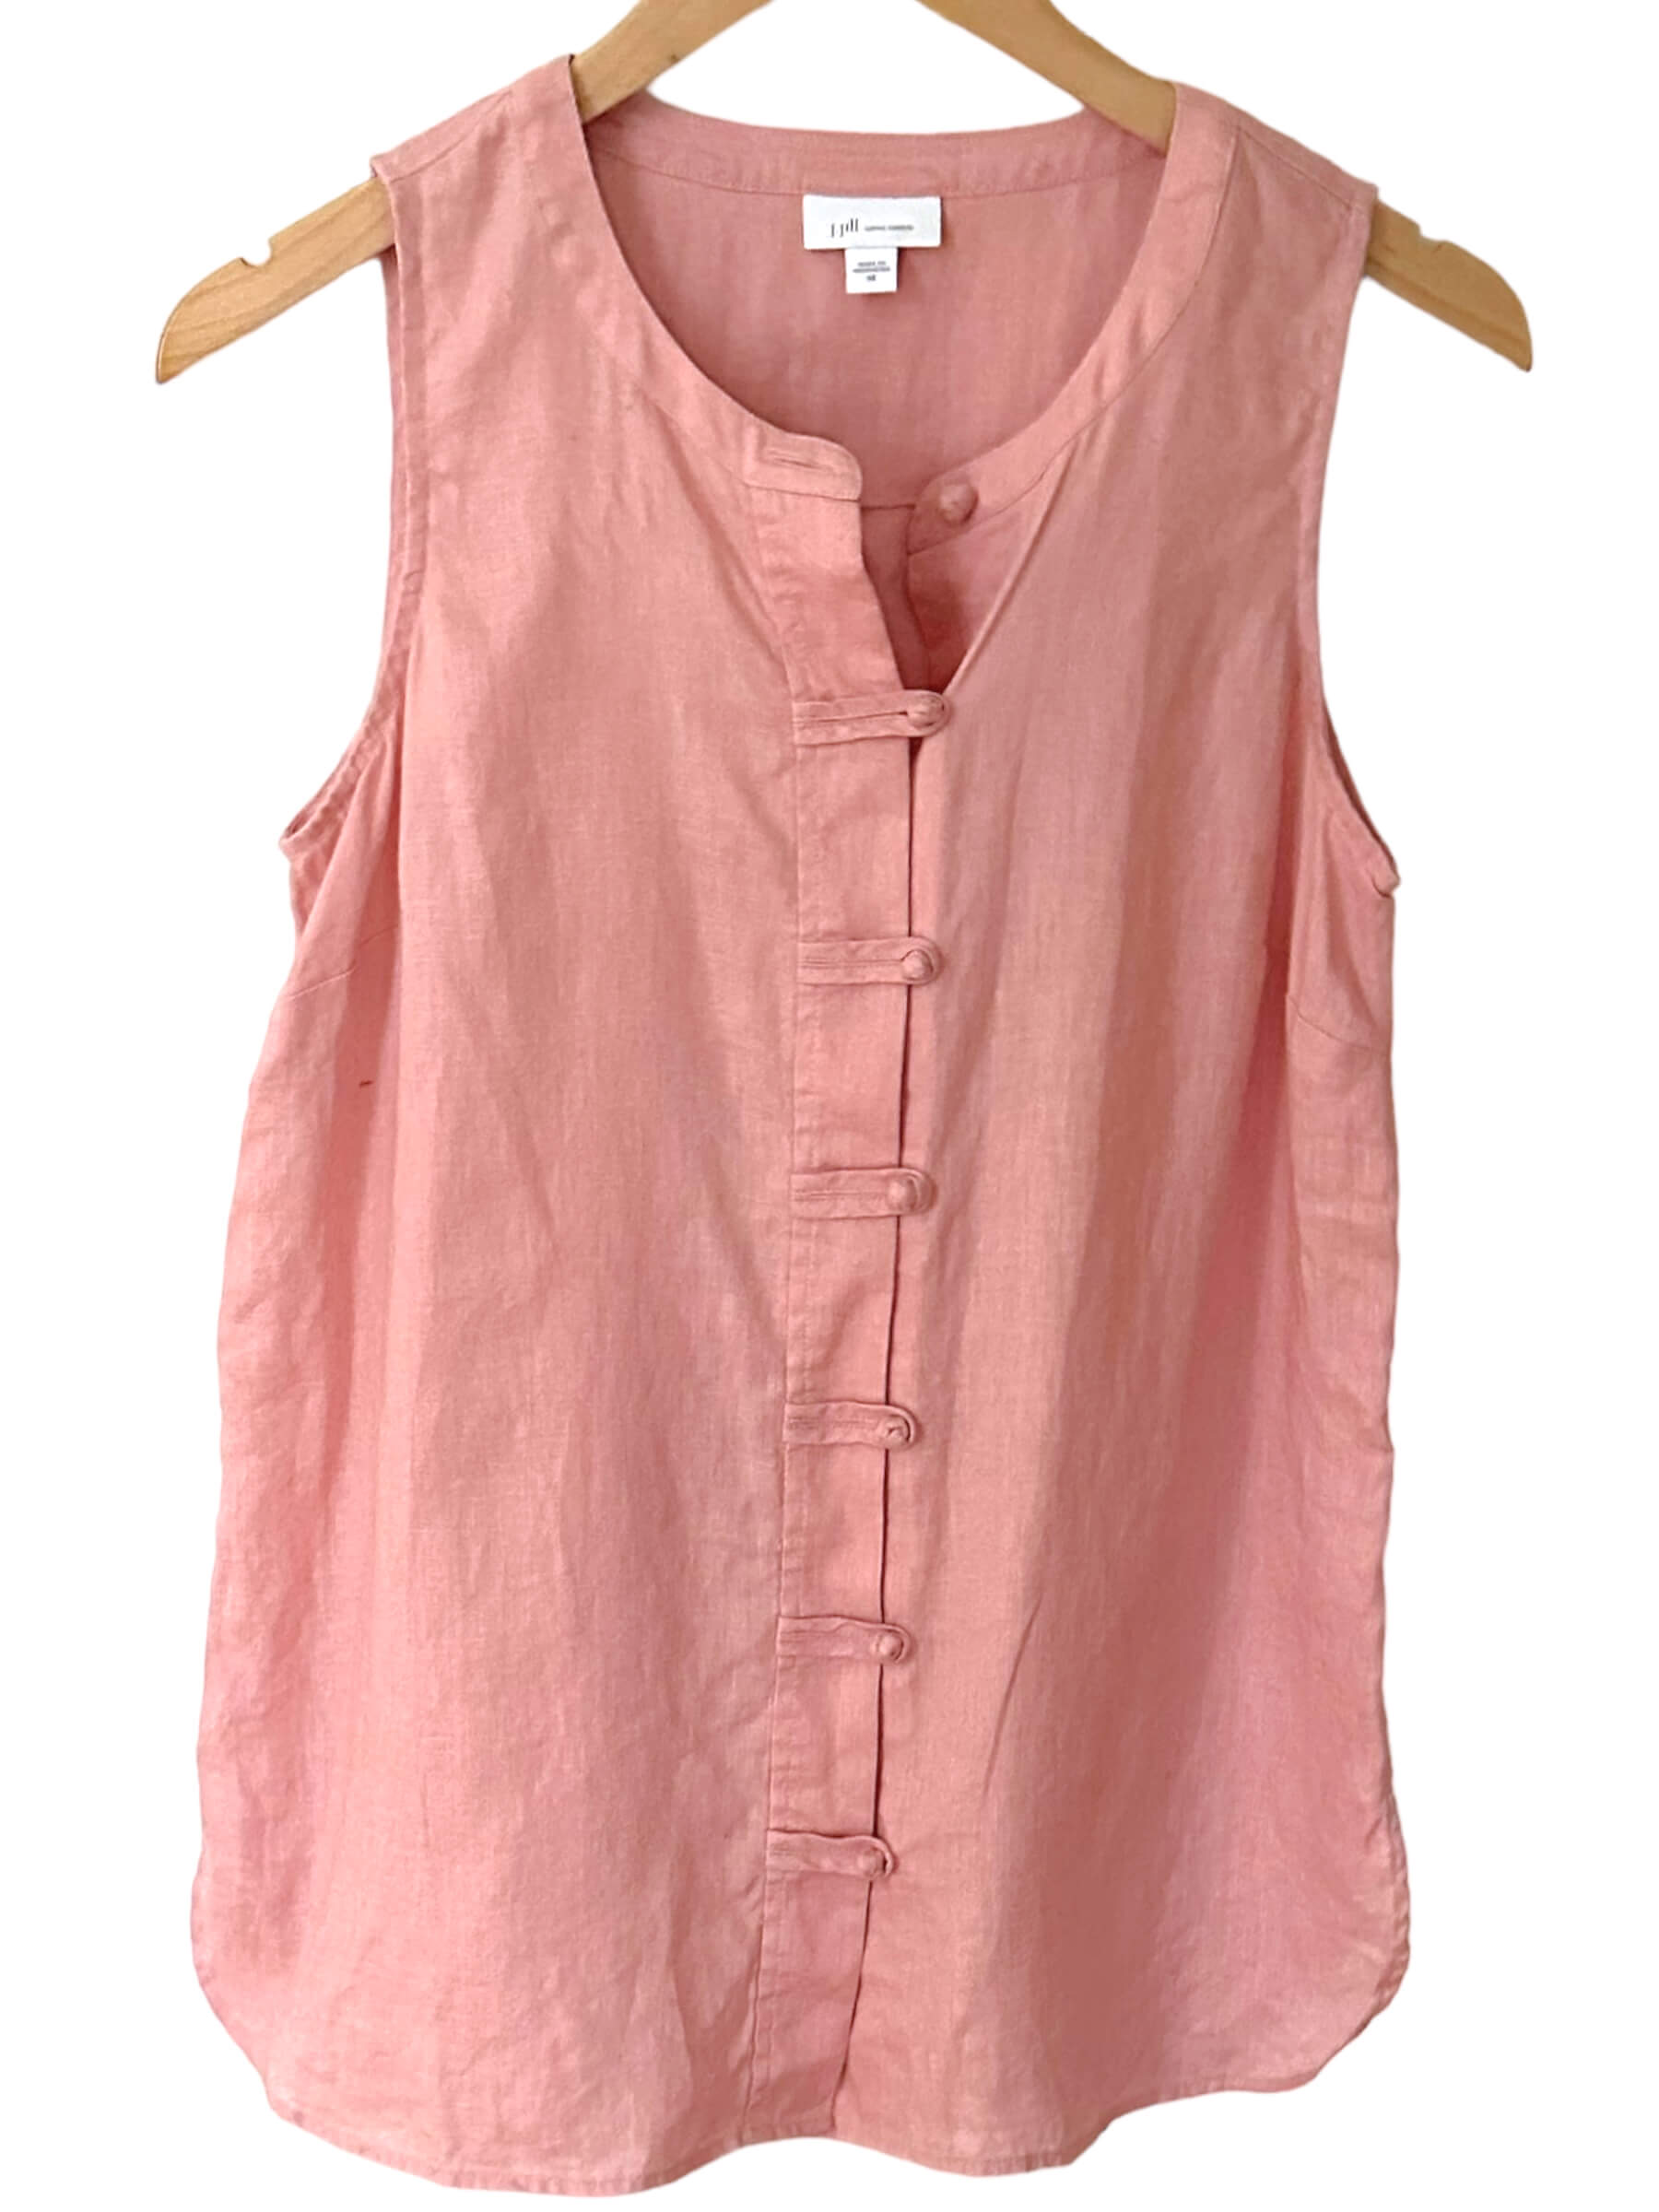 Soft Summer J.Jill pampas pink sleeveless button-up linen top